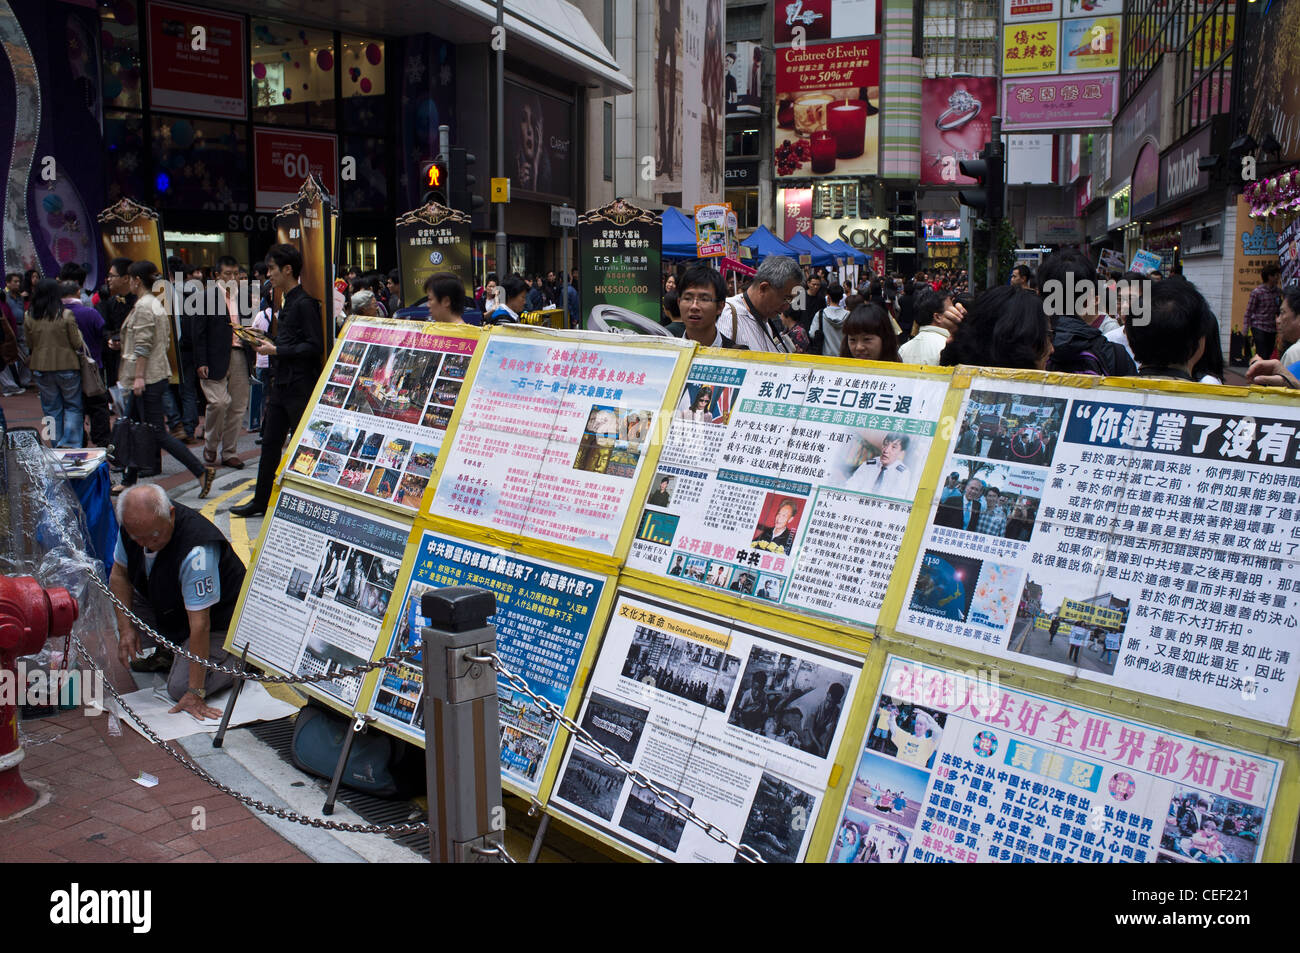 Dh Street Causeway Bay Hong Kong chinois les droits de l'homme protestent contre la Chine story boards Banque D'Images